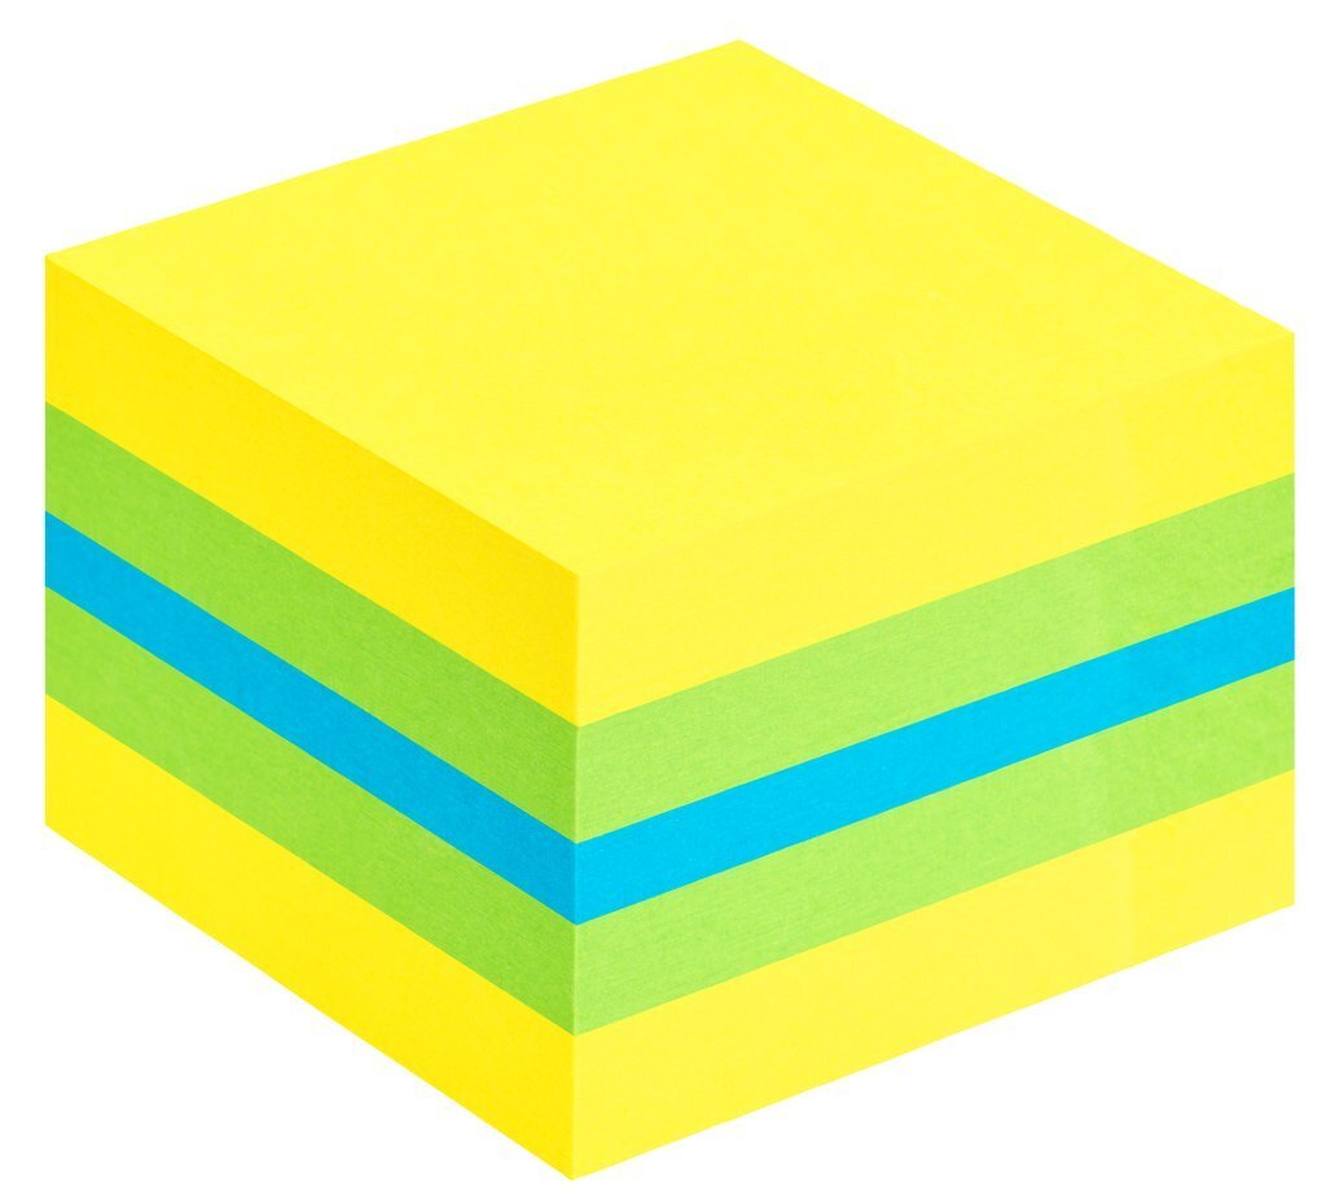 3M Post-it Mini cubo 2051-L, 51 mm x 51 mm, azul, verde lima, amarillo limón, 1 cubo con 400 hojas cada uno